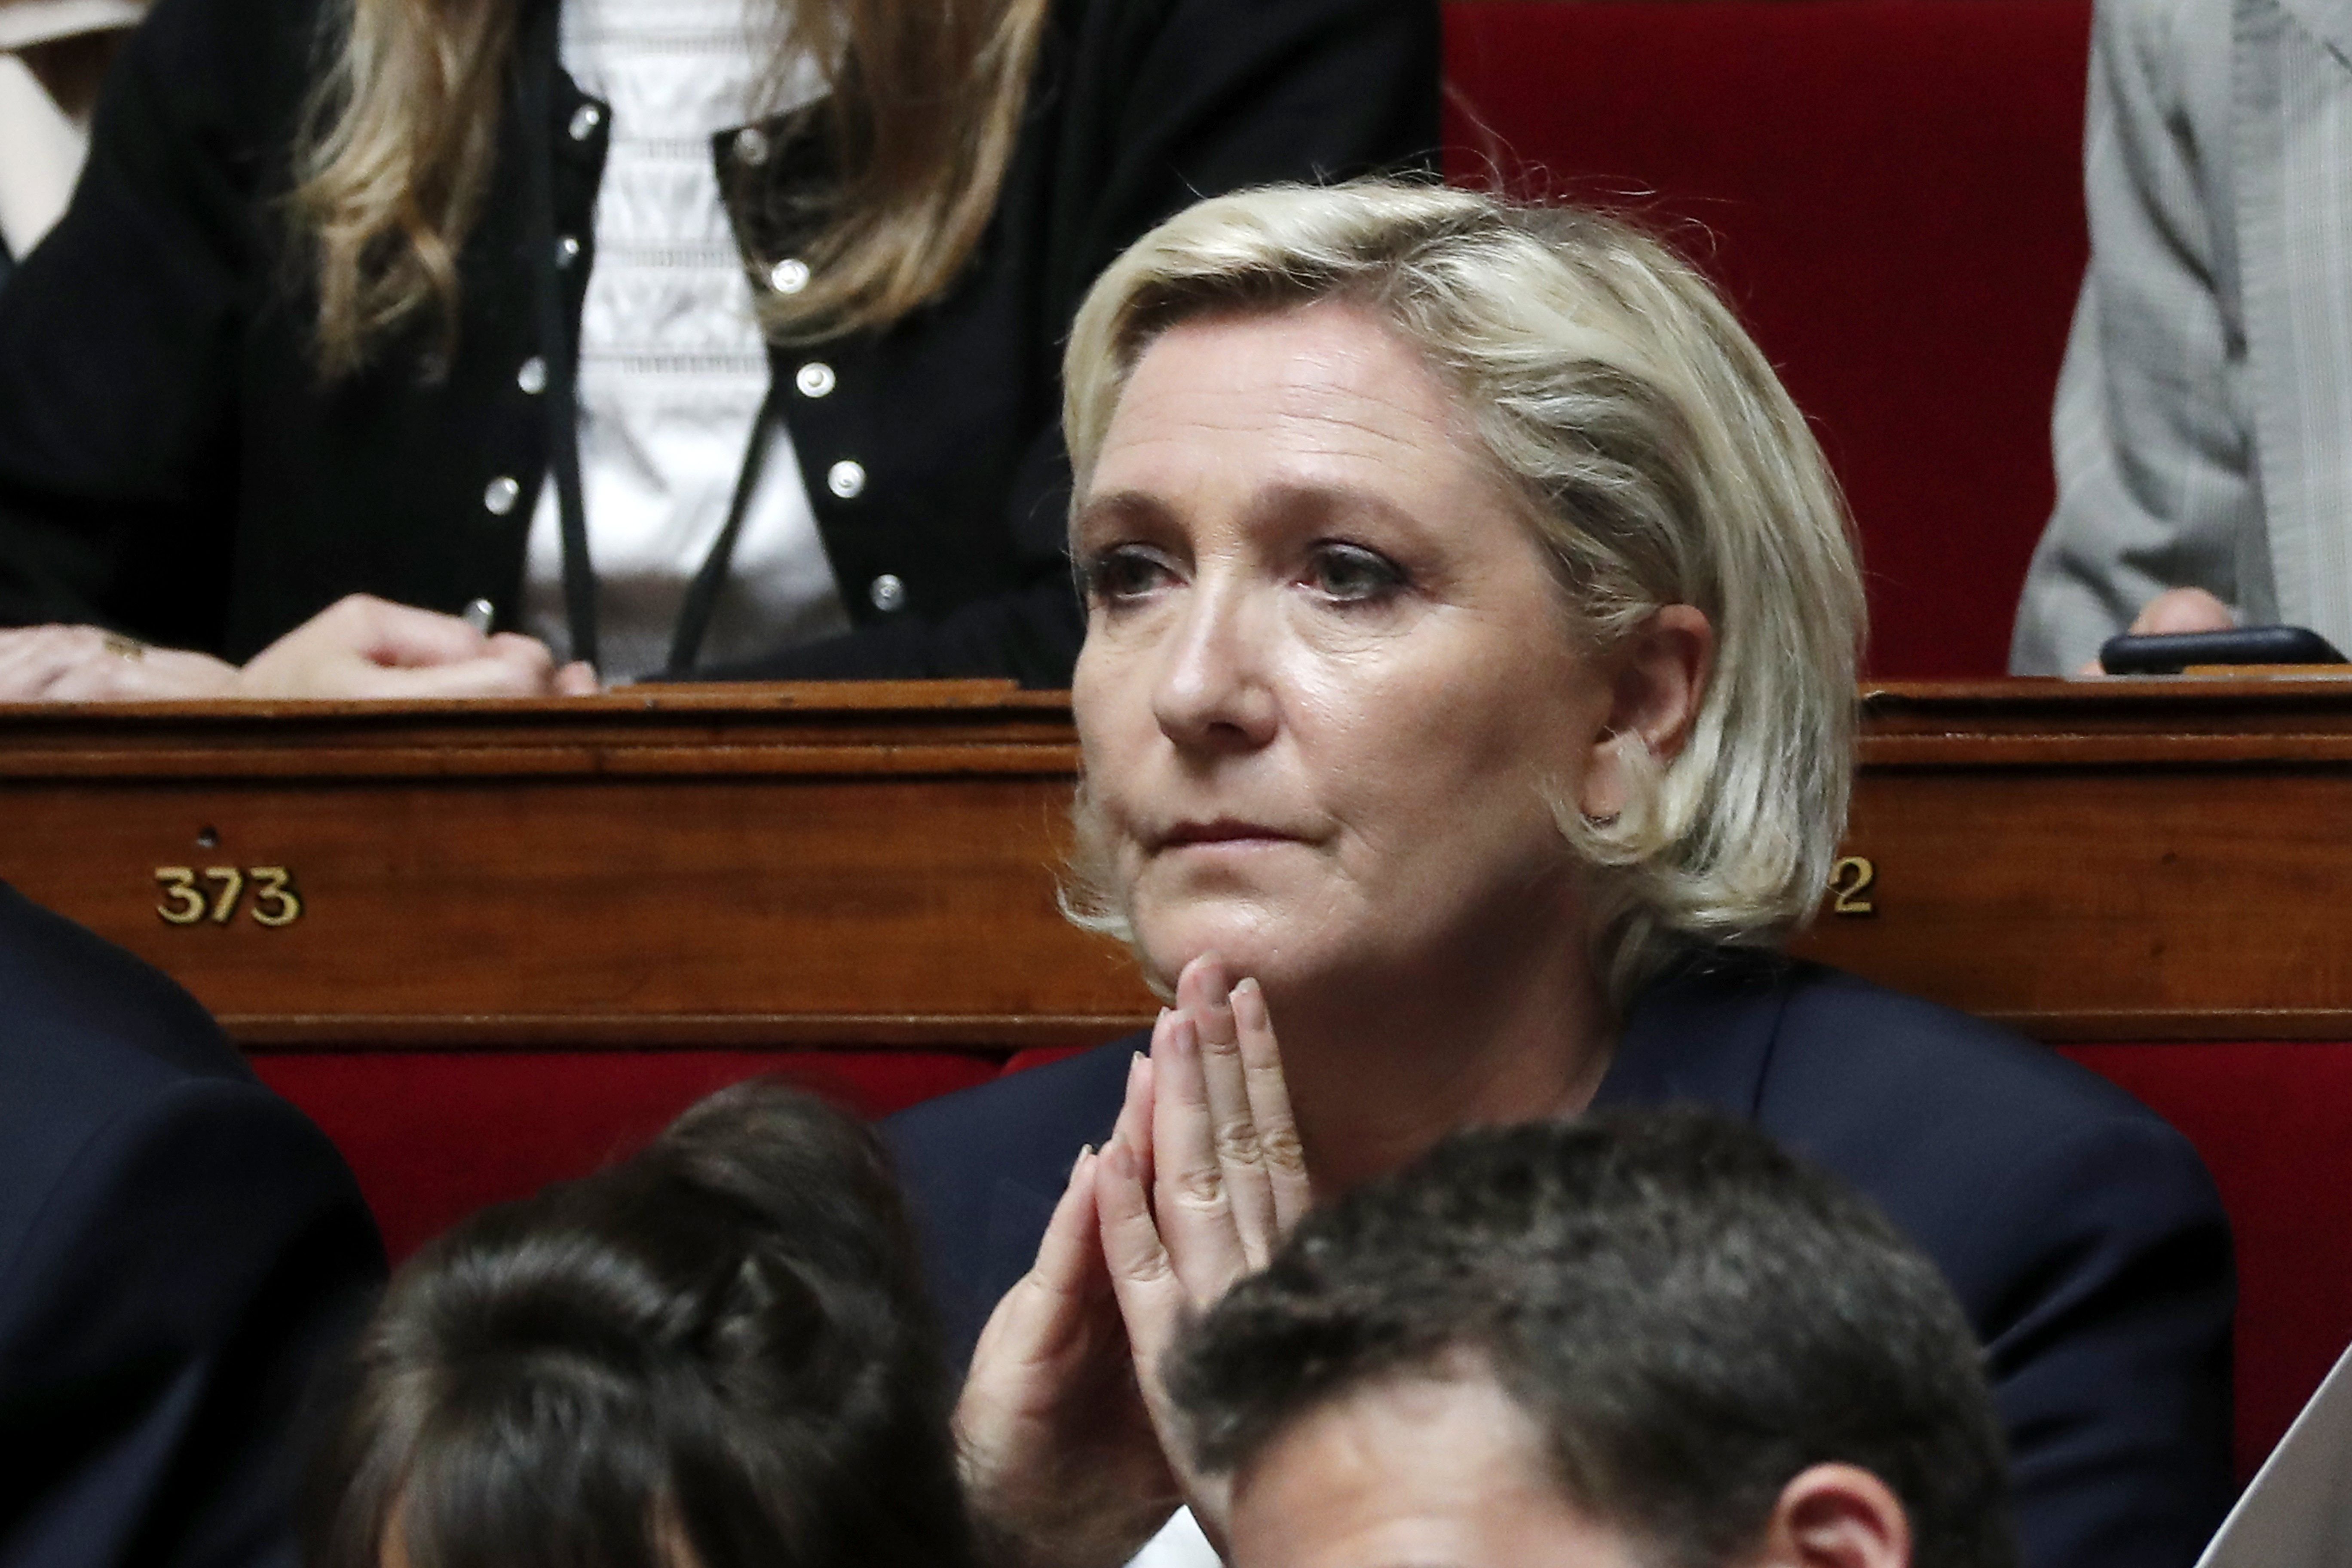 Fiasco de l'extrema dreta en les eleccions franceses: no aconsegueix cap regió